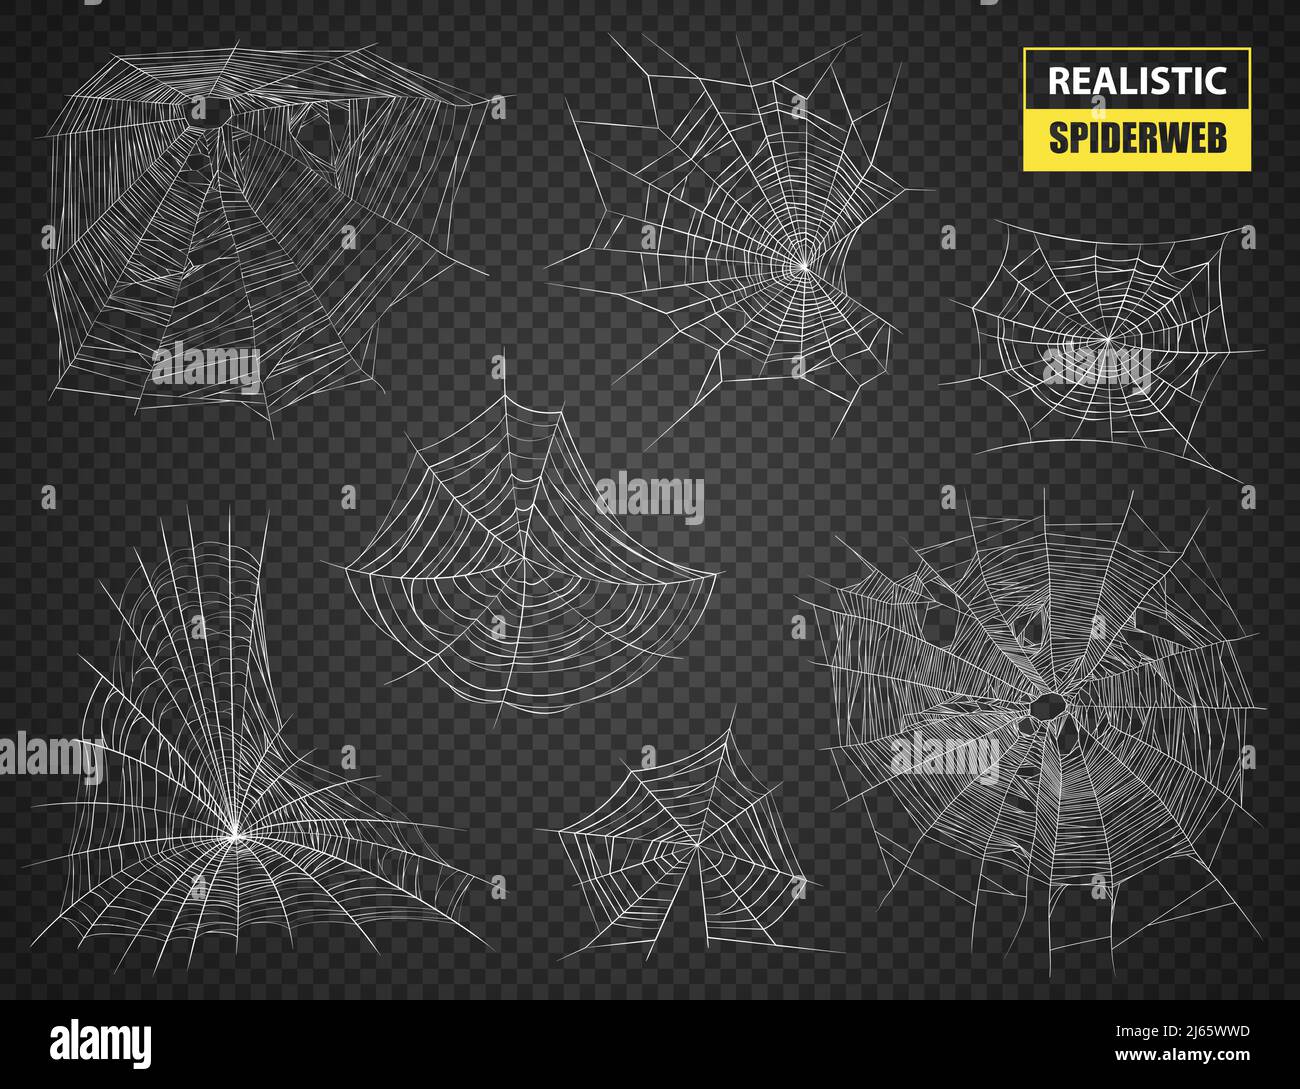 Realistische Satz von weißen ausgefeilten Spinnweben verschiedener Formen und Größen auf dunkeltransparenten Hintergrund Vektorgrafik Stock Vektor